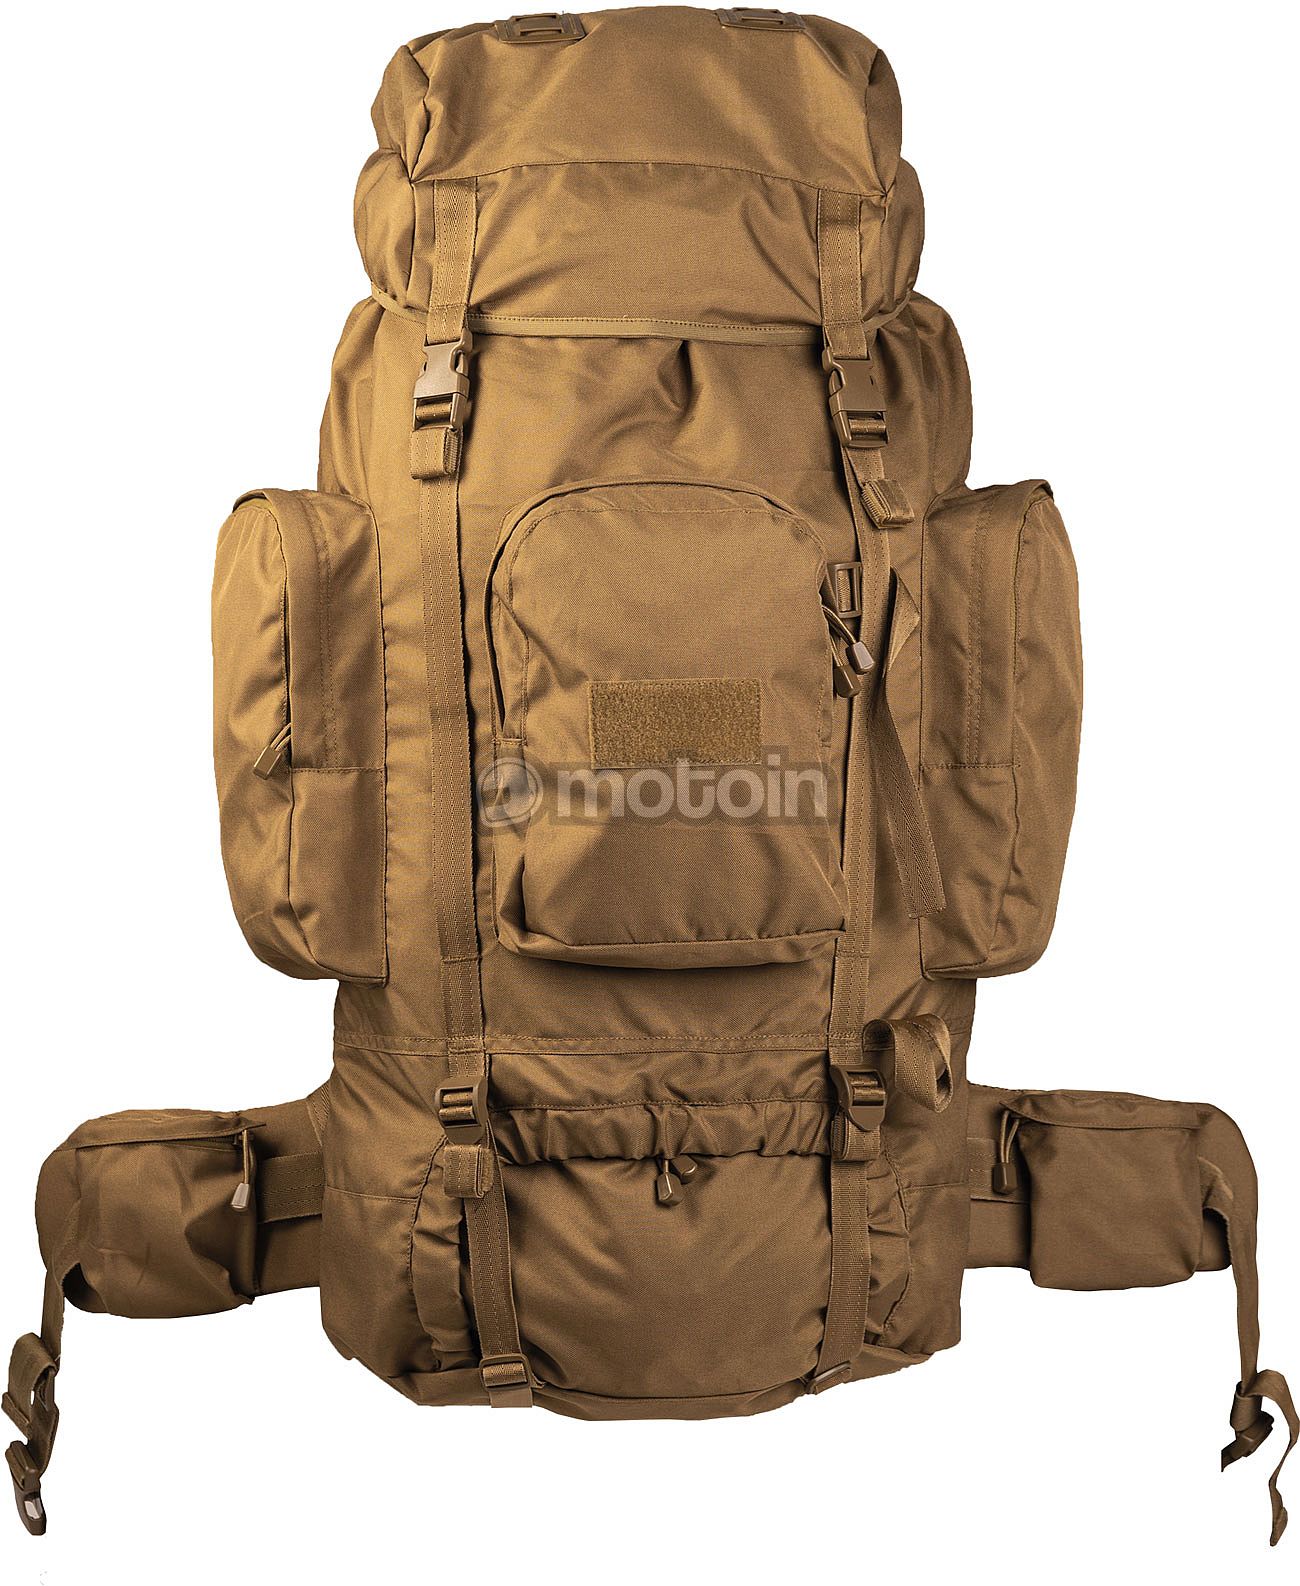 Mil-Tec Recom, backpack